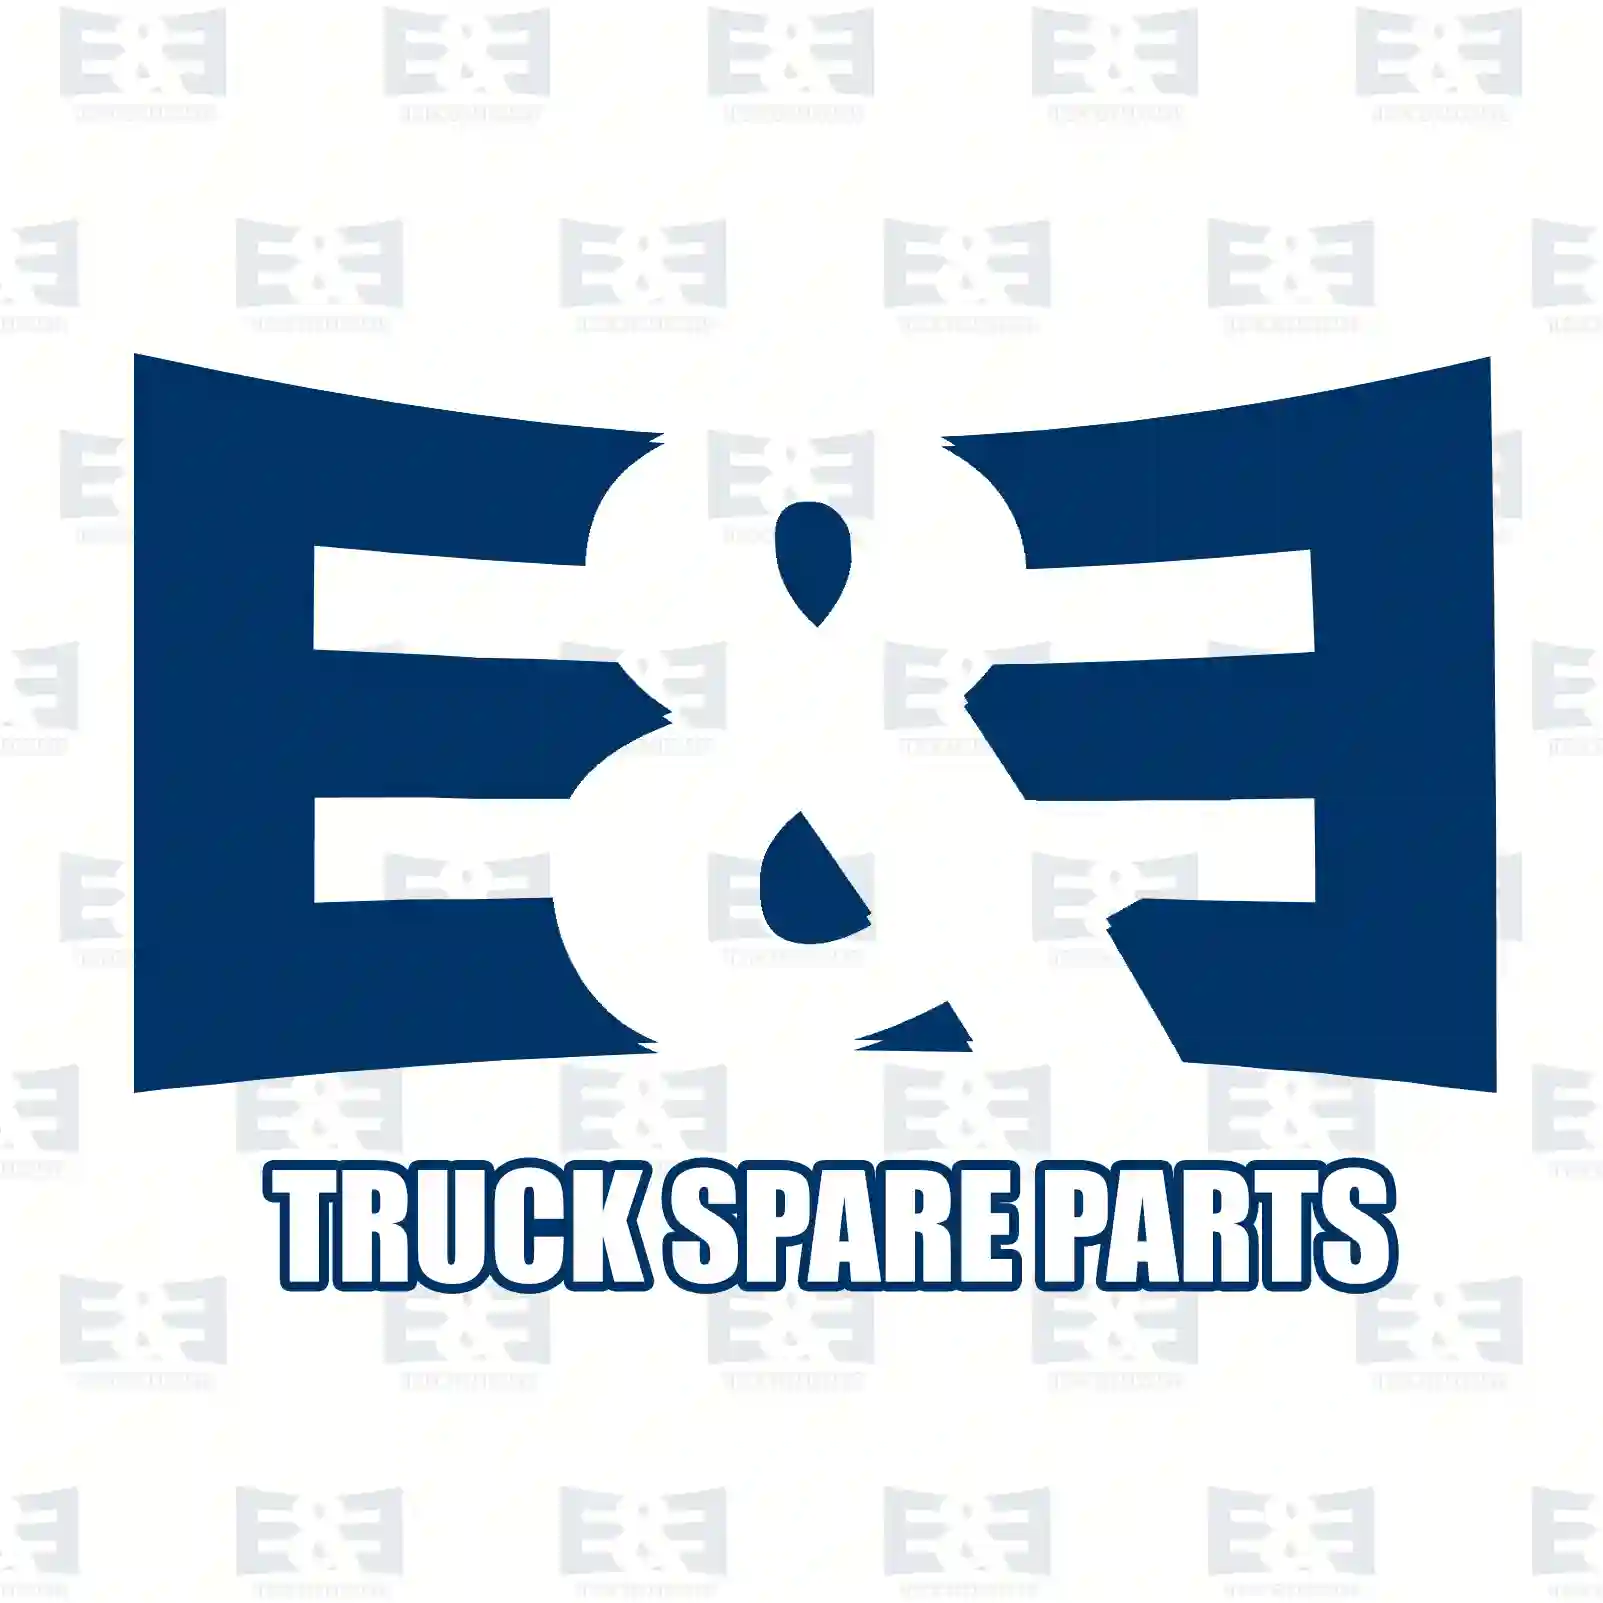 Step well case, right, 2E2280948, 504054940 ||  2E2280948 E&E Truck Spare Parts | Truck Spare Parts, Auotomotive Spare Parts Step well case, right, 2E2280948, 504054940 ||  2E2280948 E&E Truck Spare Parts | Truck Spare Parts, Auotomotive Spare Parts